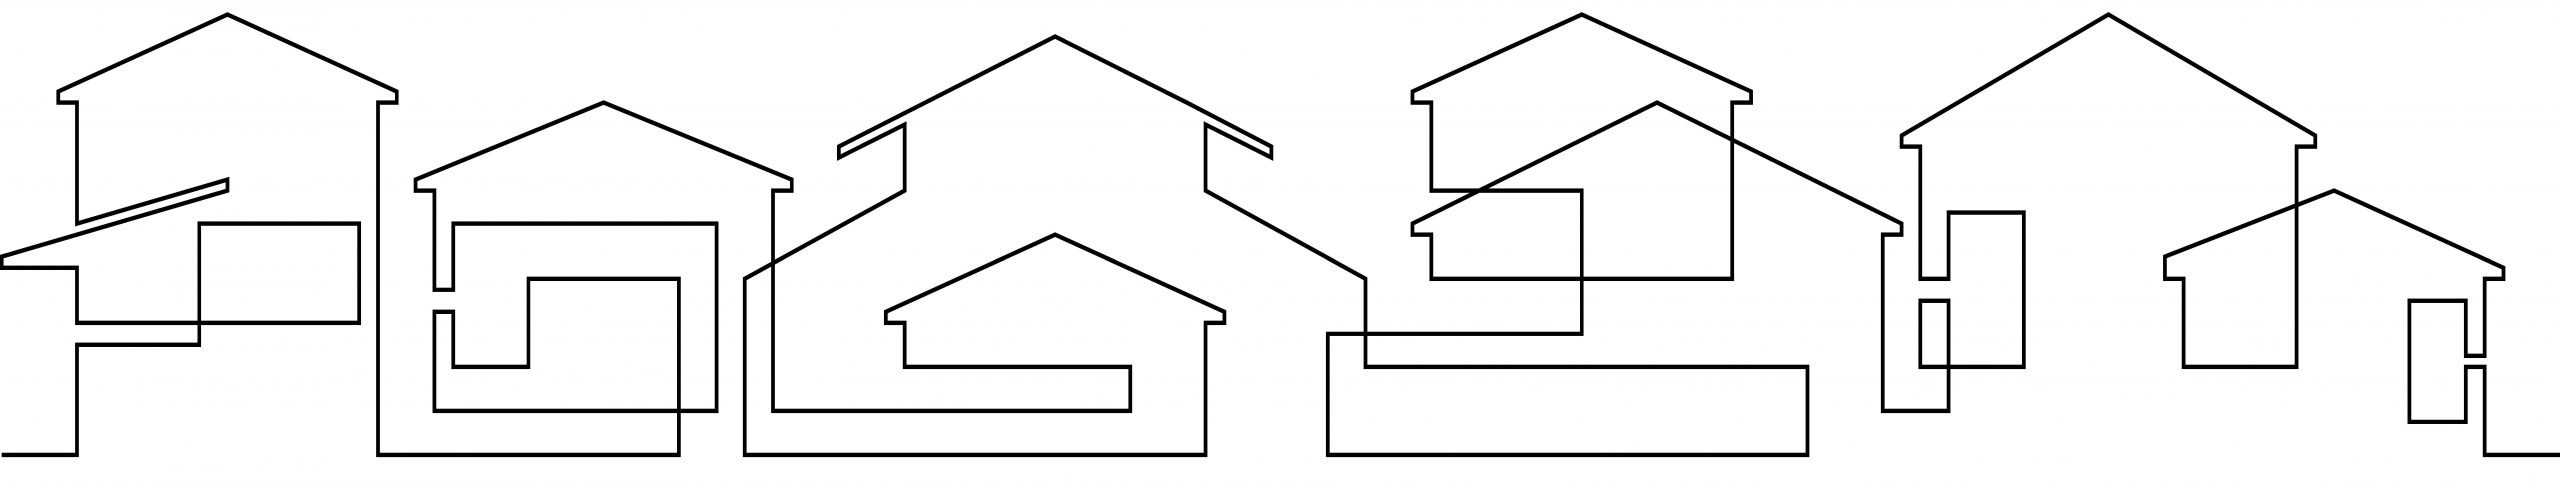 Κοφινάς-Προκατασκευασμένα-σπίτια-ΦΙνλαδικές-κατοικίες-18